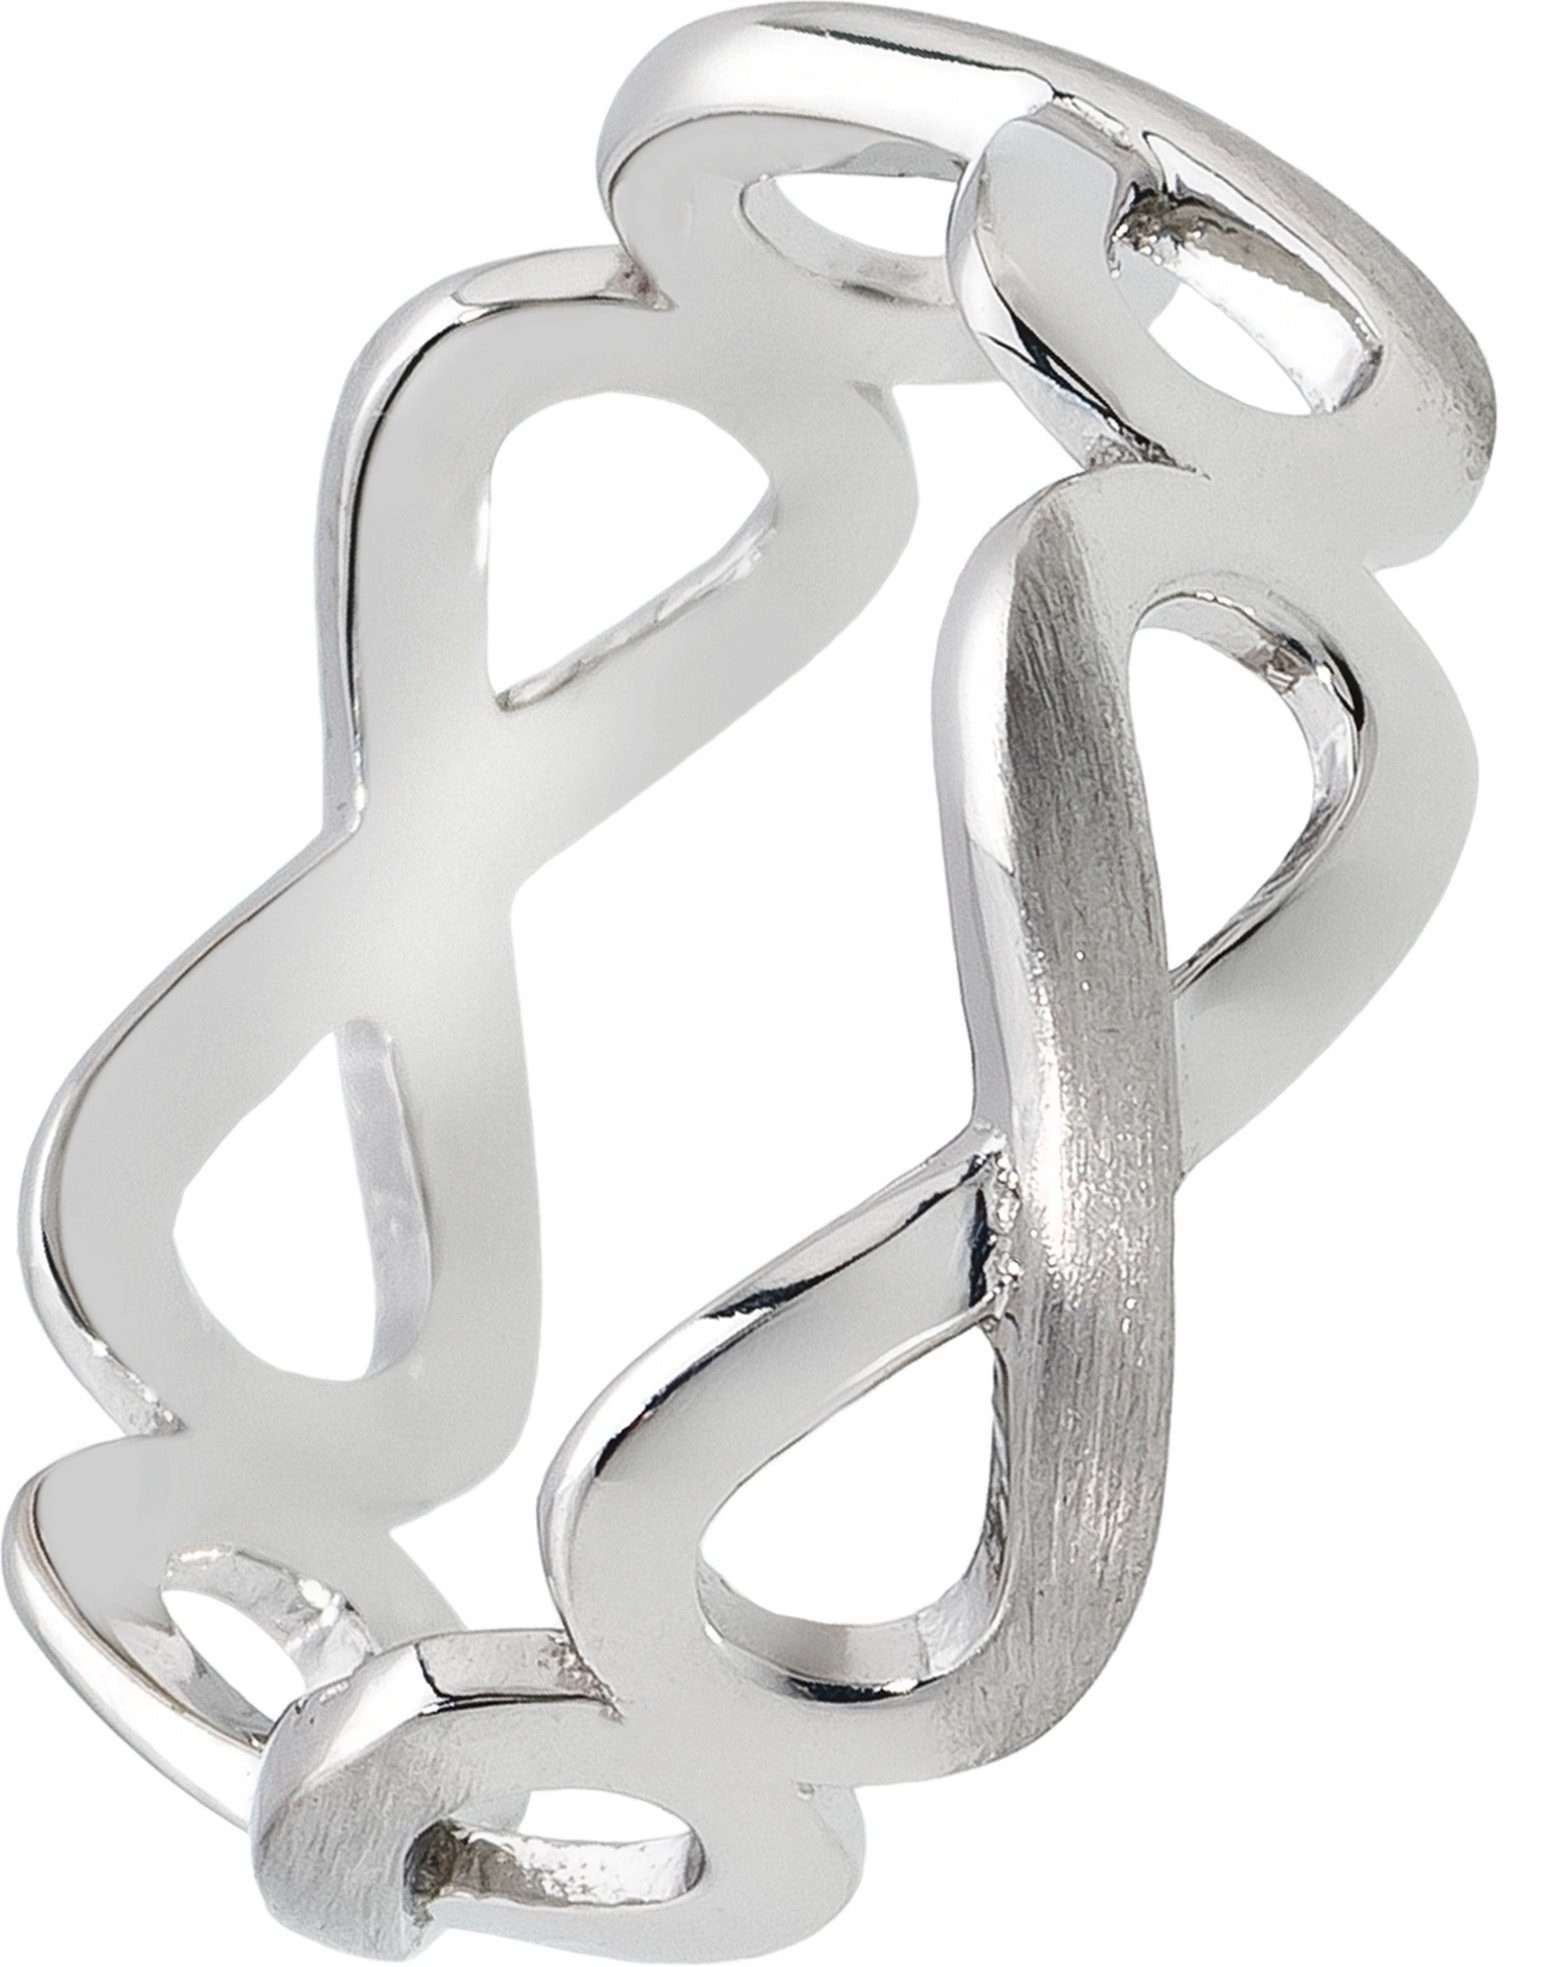 Balia Silberring Balia Ring für Damen Silber 925 (Fingerring), Damen Ring Unendlichkeit, 54 (17,2), 925 Sterling Silber